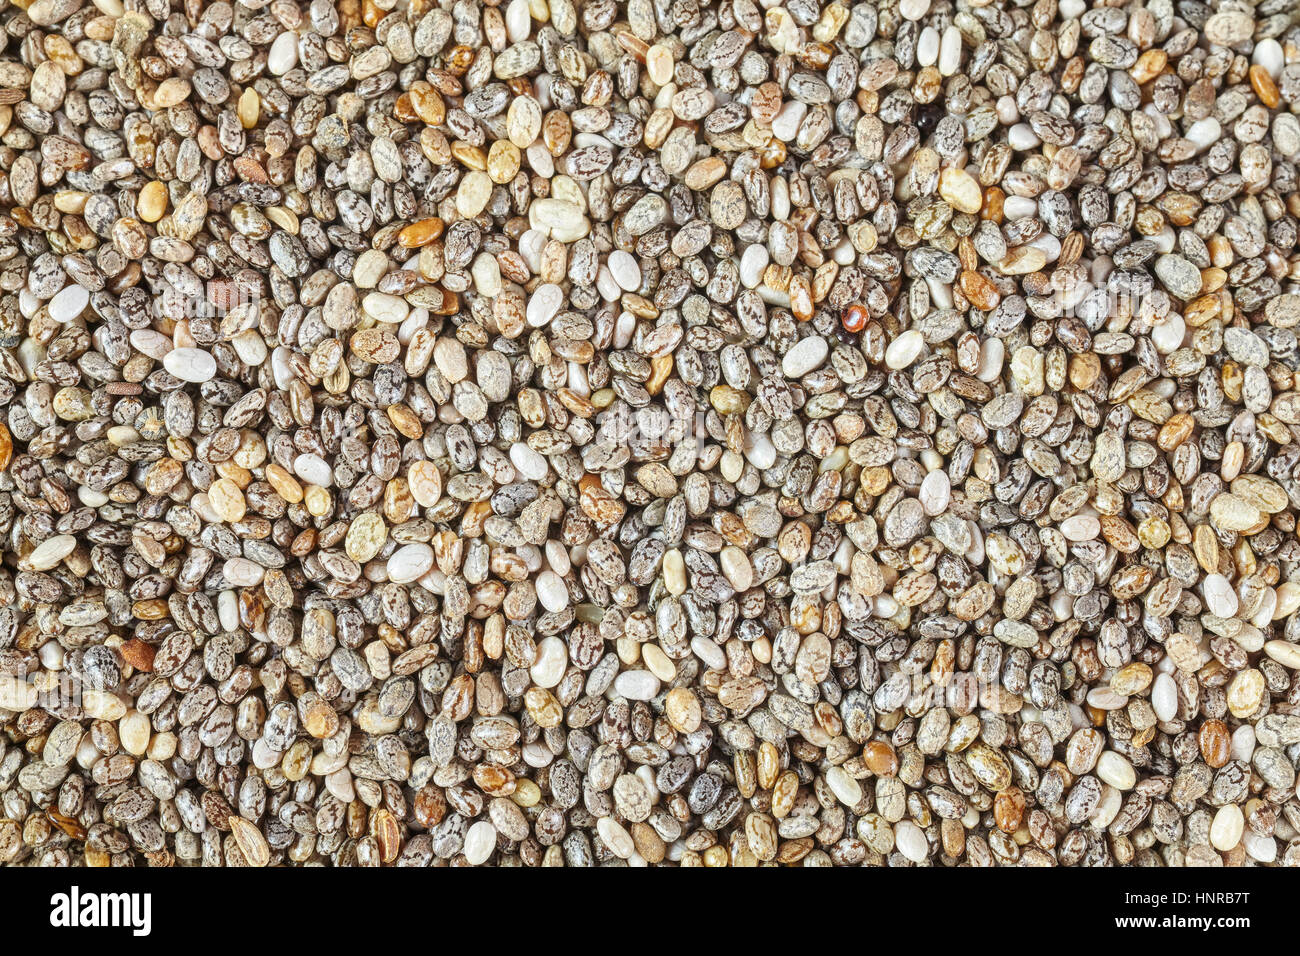 Extreme Picture cerca de chia semillas, alimentos ricos en ácidos grasos omega-3. Foto de stock